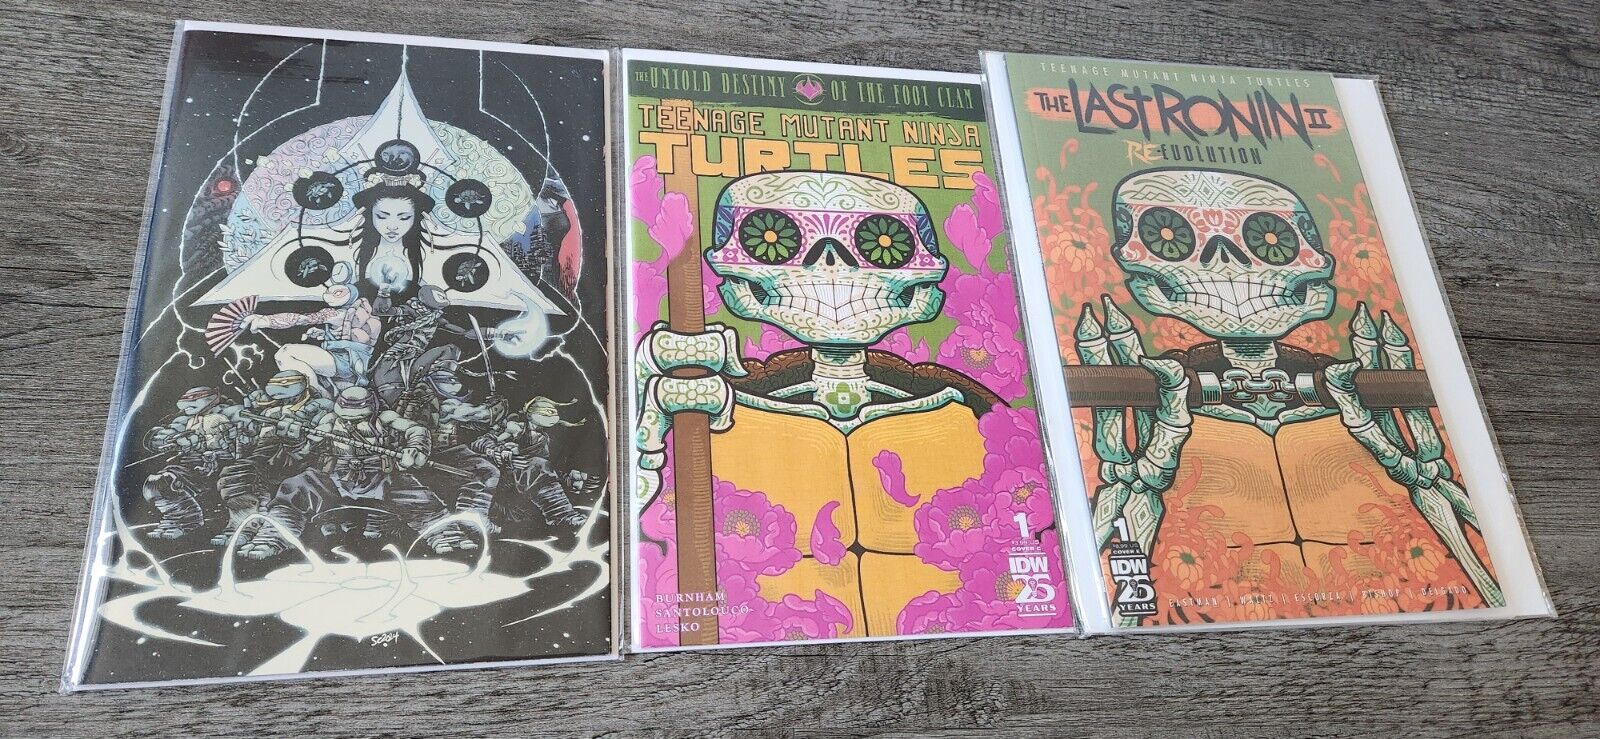 Teenage Mutant Ninja Turtles - Foil, Variant Covers - IDW Comics Lot